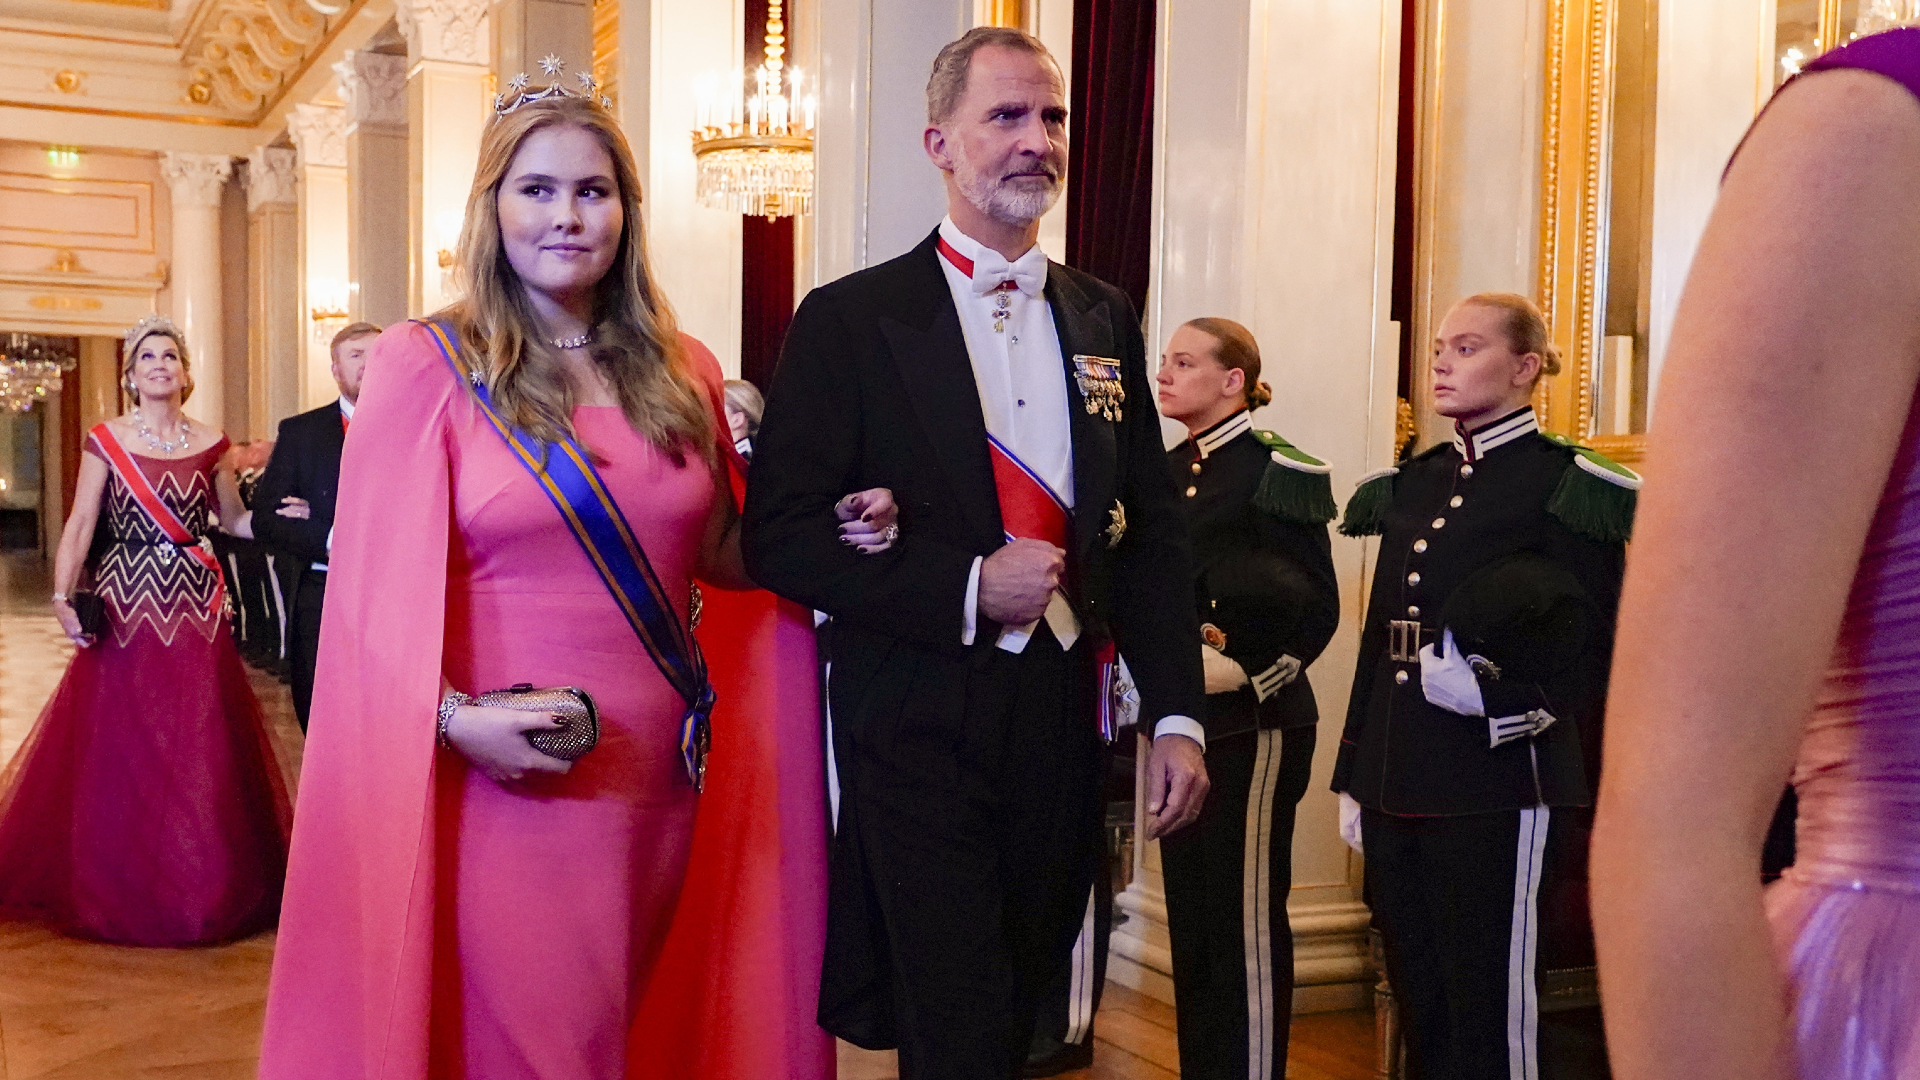 Gespecificeerd Staren Mondstuk Amalia draagt huwelijksdiadeem van moeder Máxima bij galadiner in Oslo |  Hart van Nederland